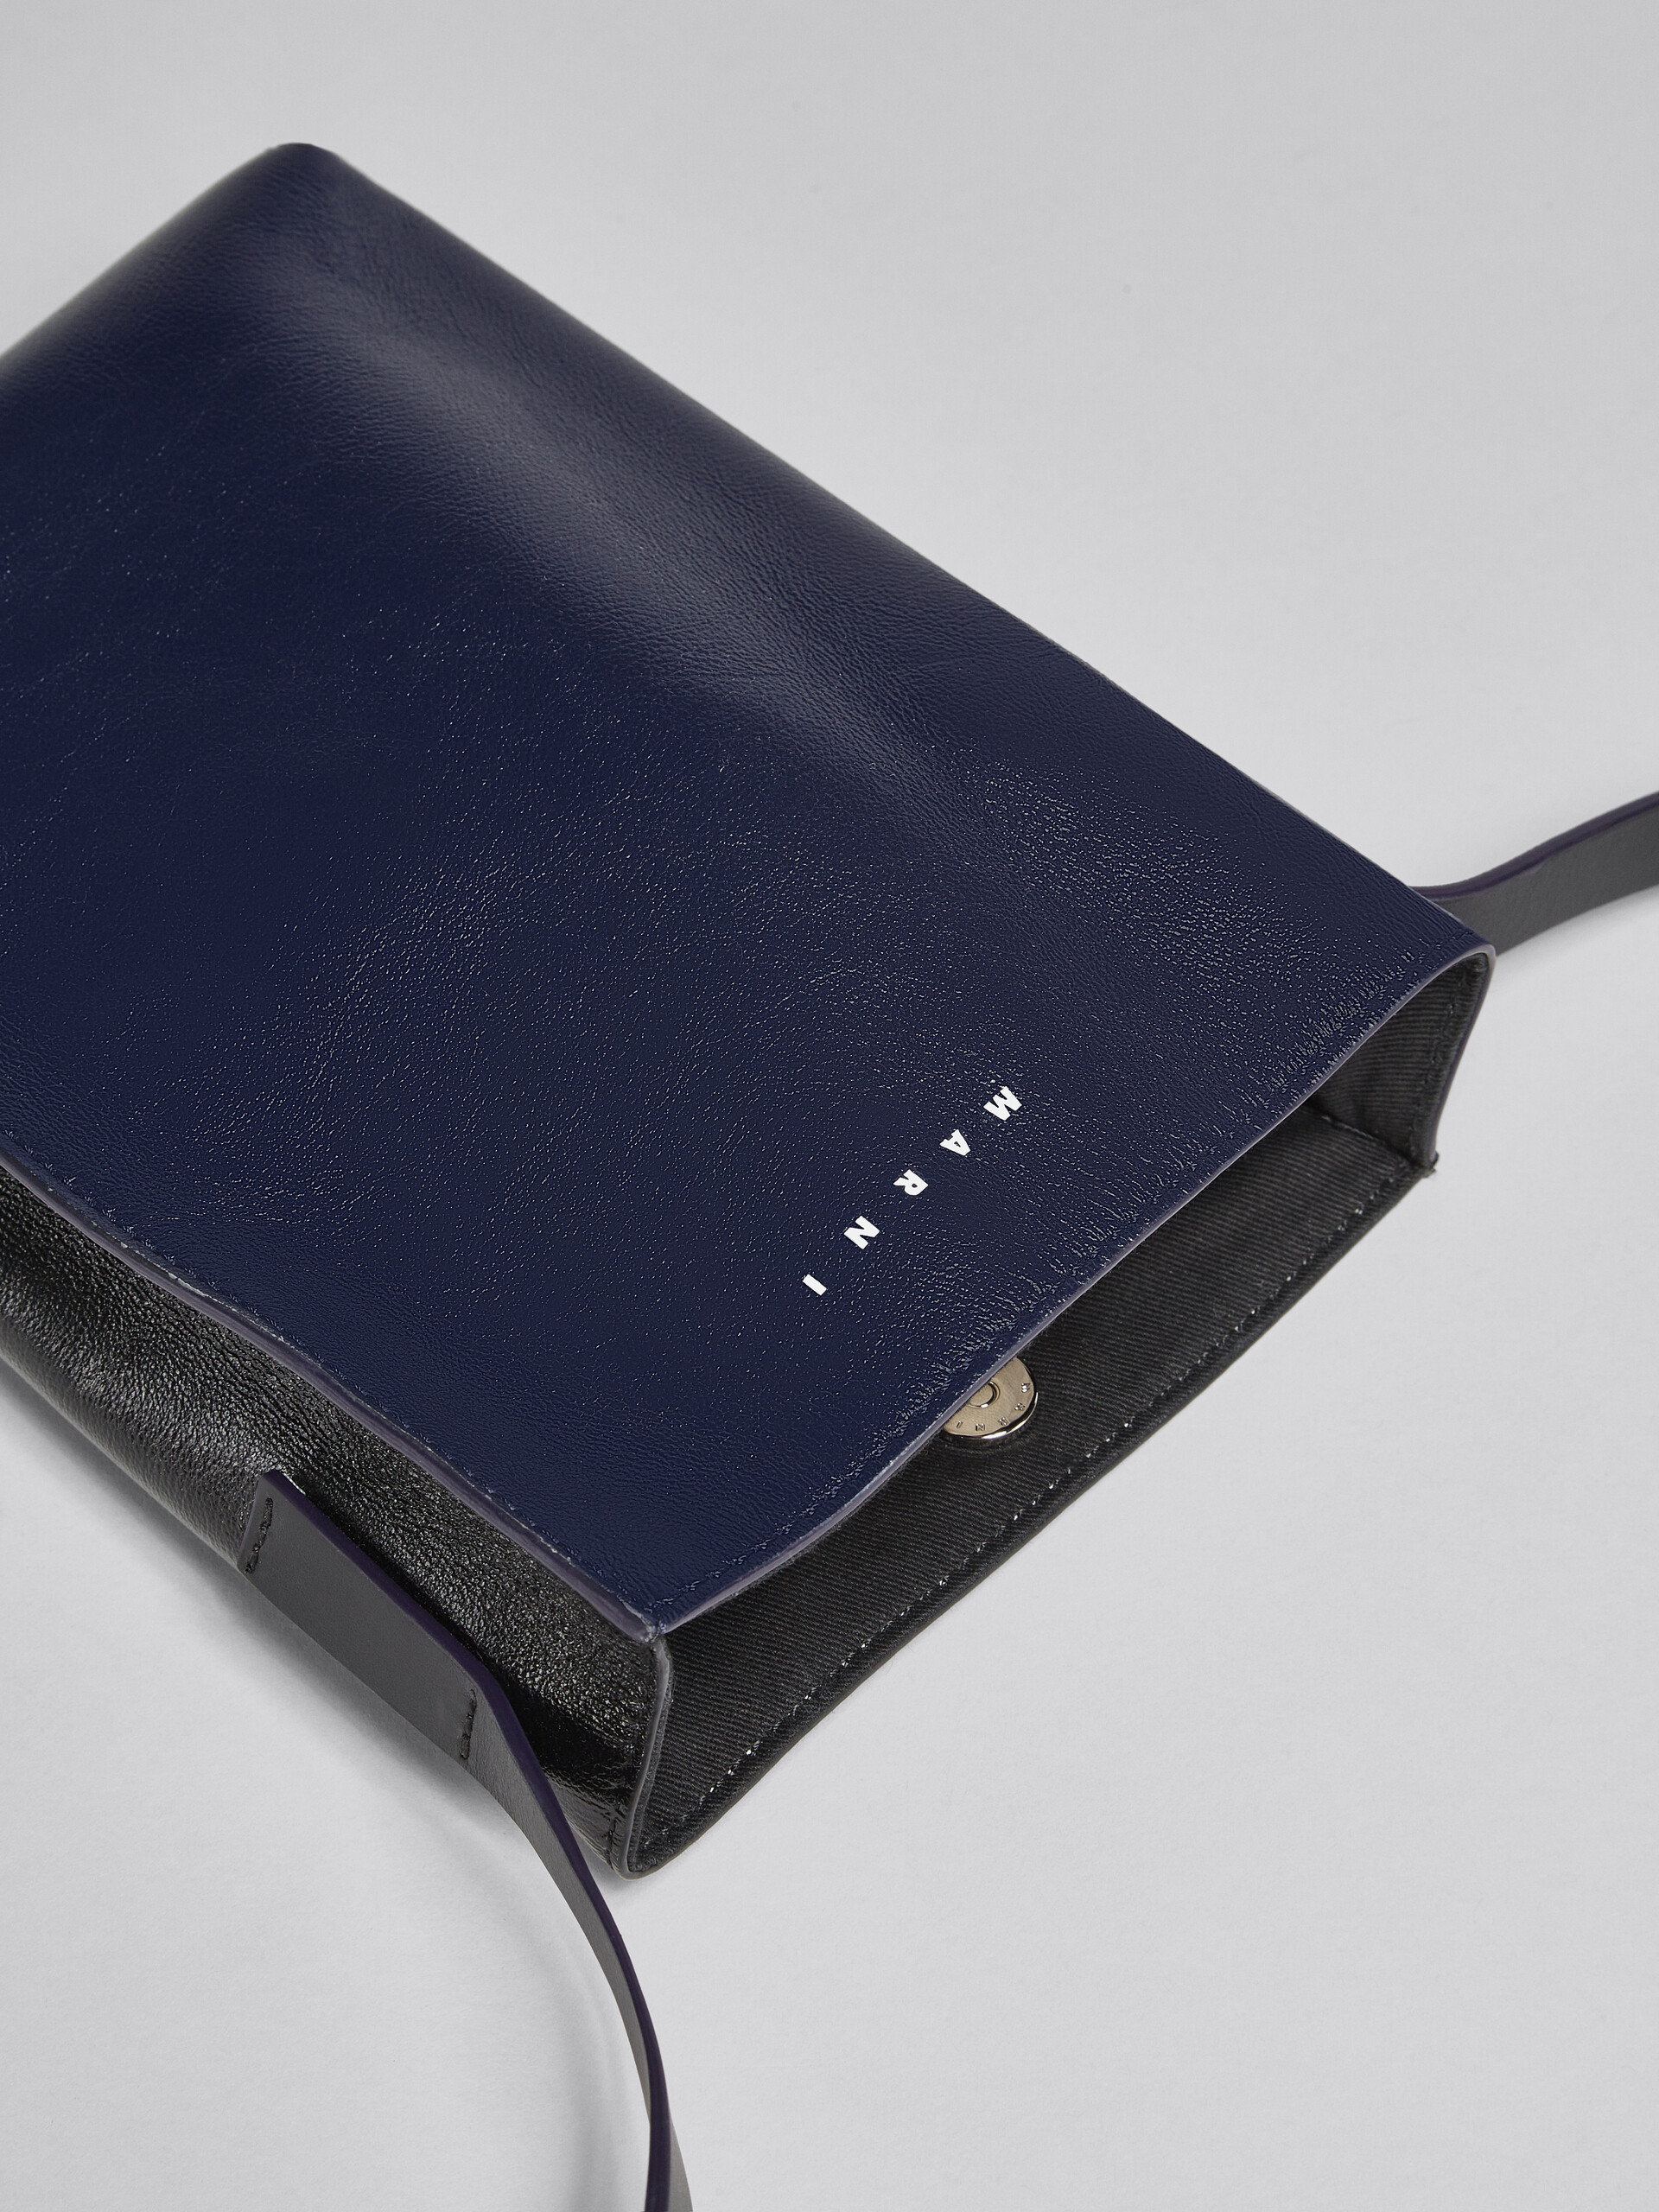 Sac MUSEO SOFT en cuir brillant bleu et noir - Sacs portés épaule - Image 5